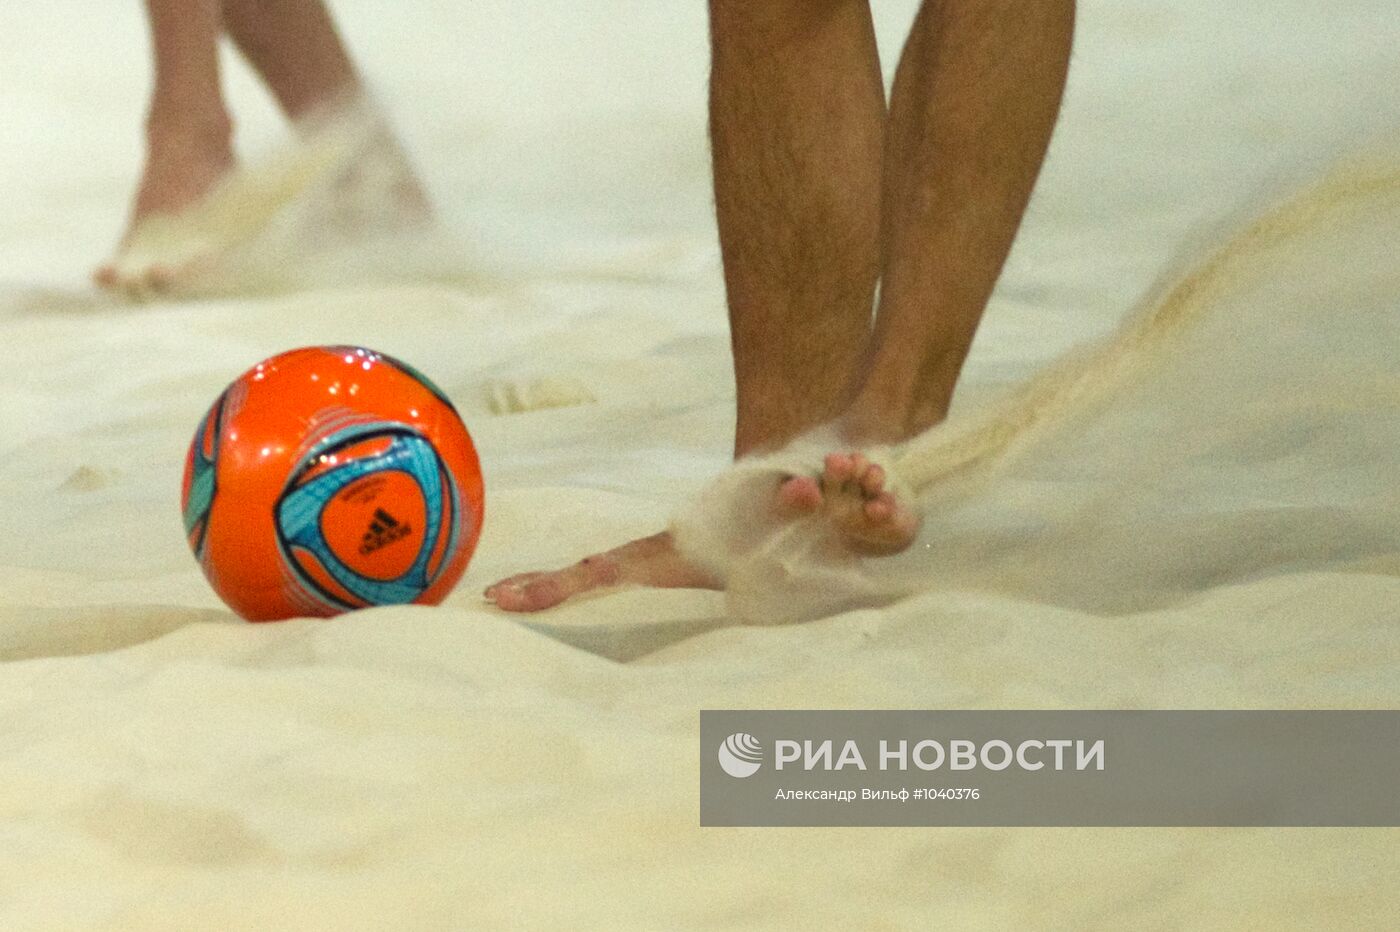 Пляжный футбол. Чемпионат Европы. Тренировка сборной России